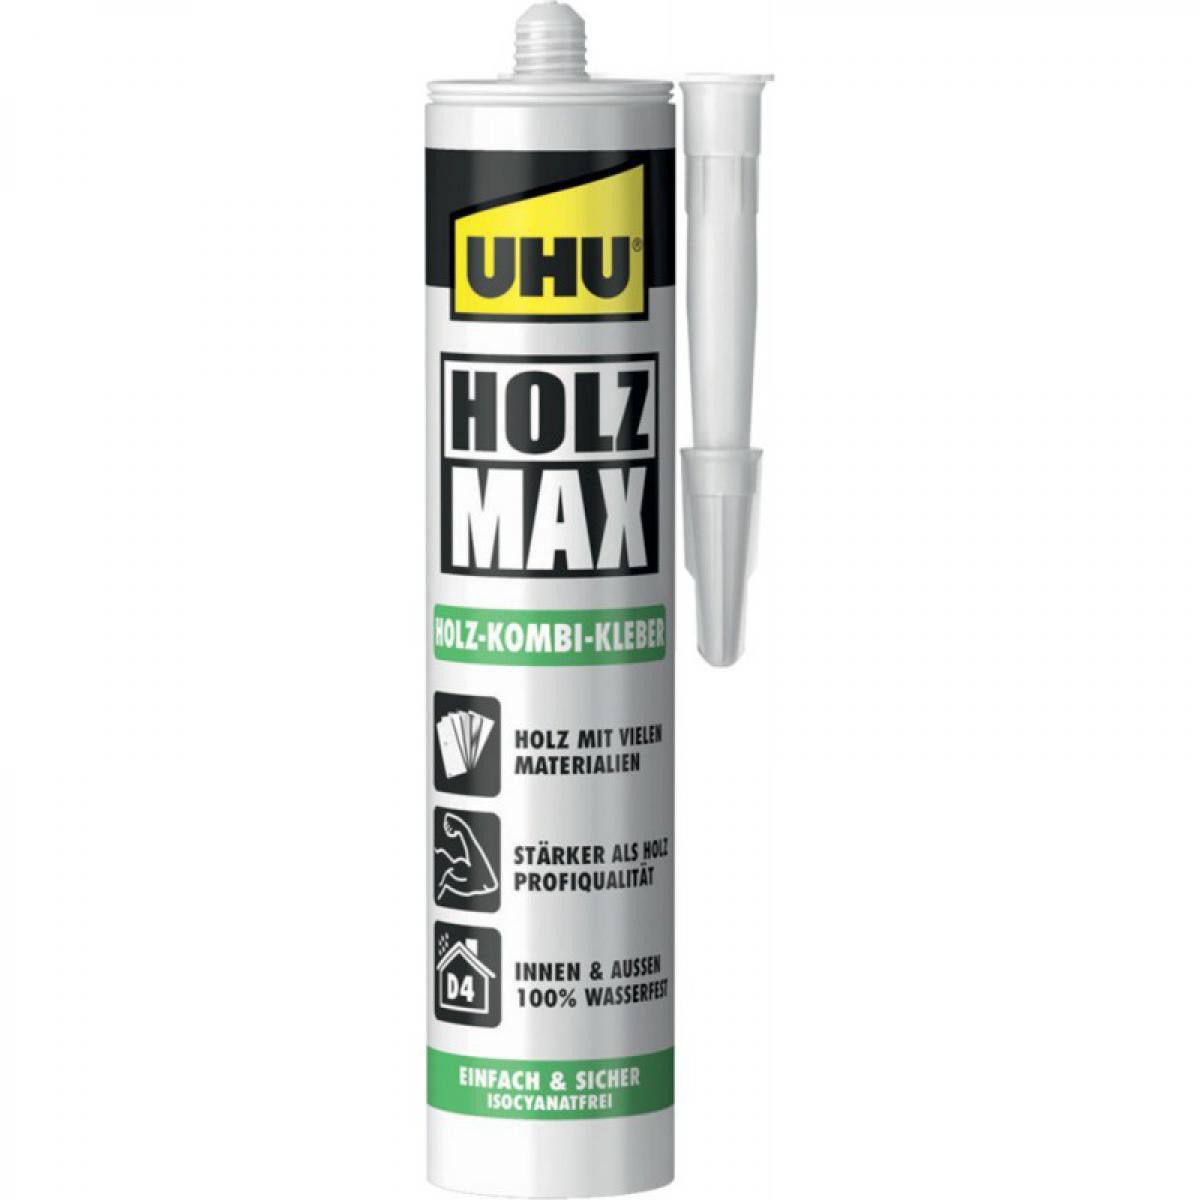 Uhu - Colle a bois MAX sans solvants, tube de 100 g, 1 pièce, 51305 - UHU - Colle & adhésif